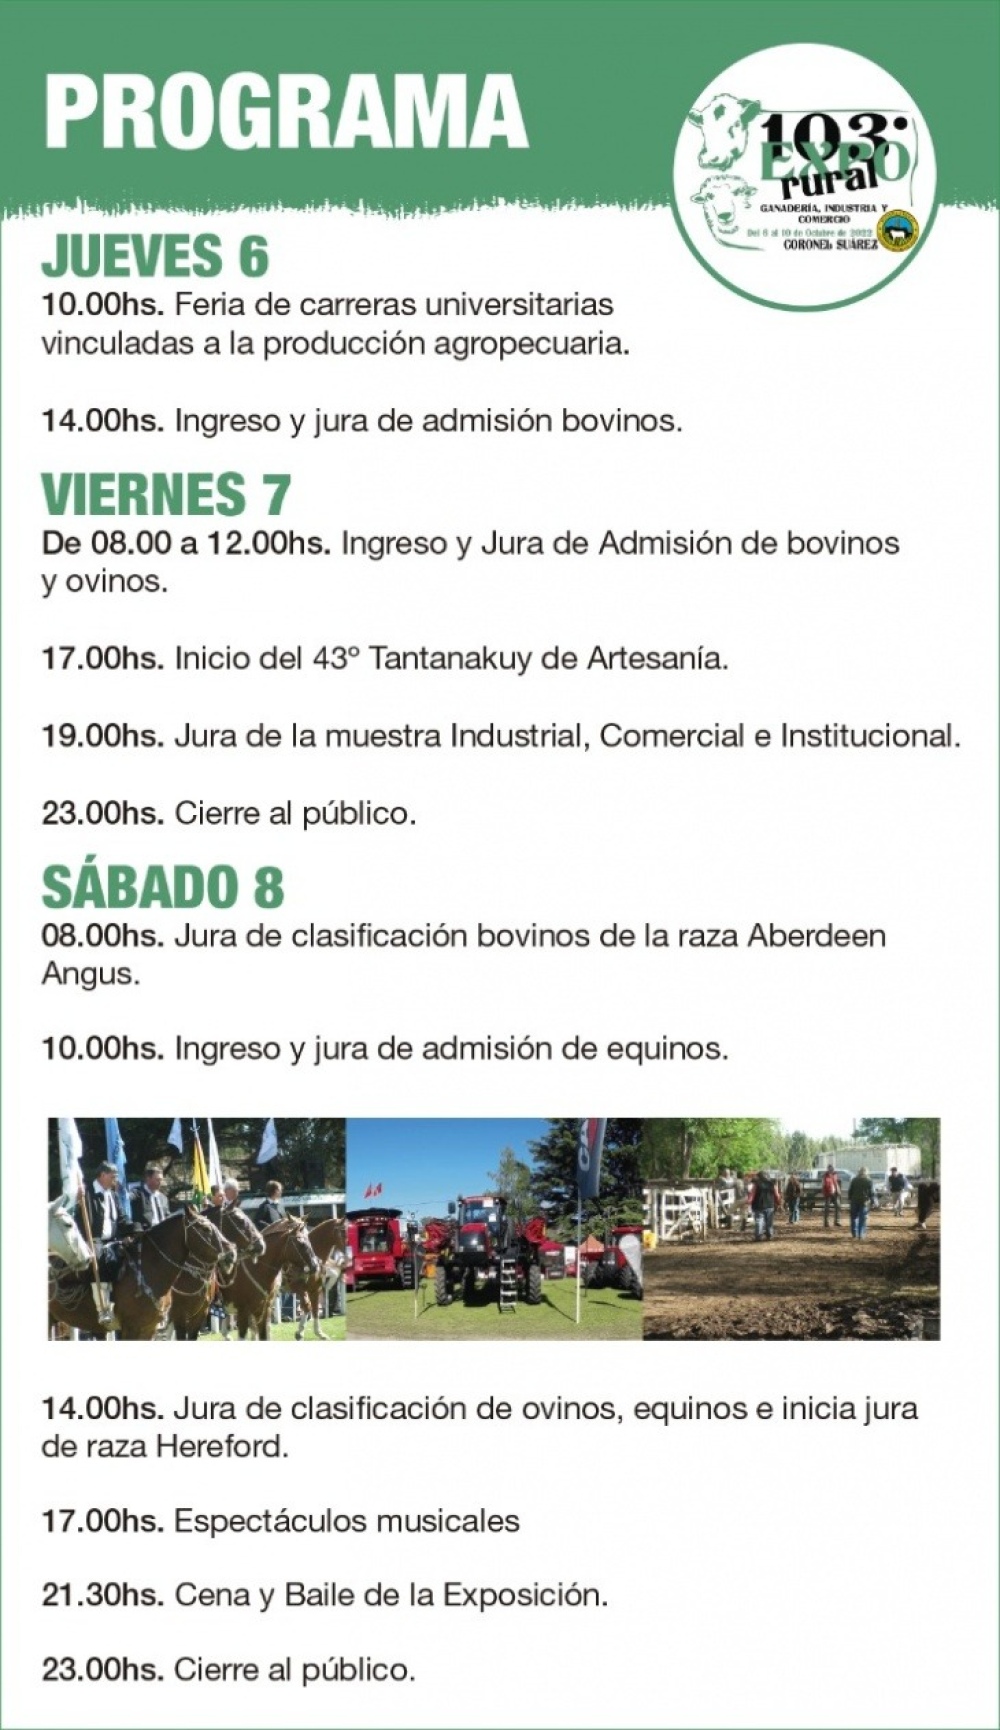 Arranca la Expo rural de Coronel Suárez